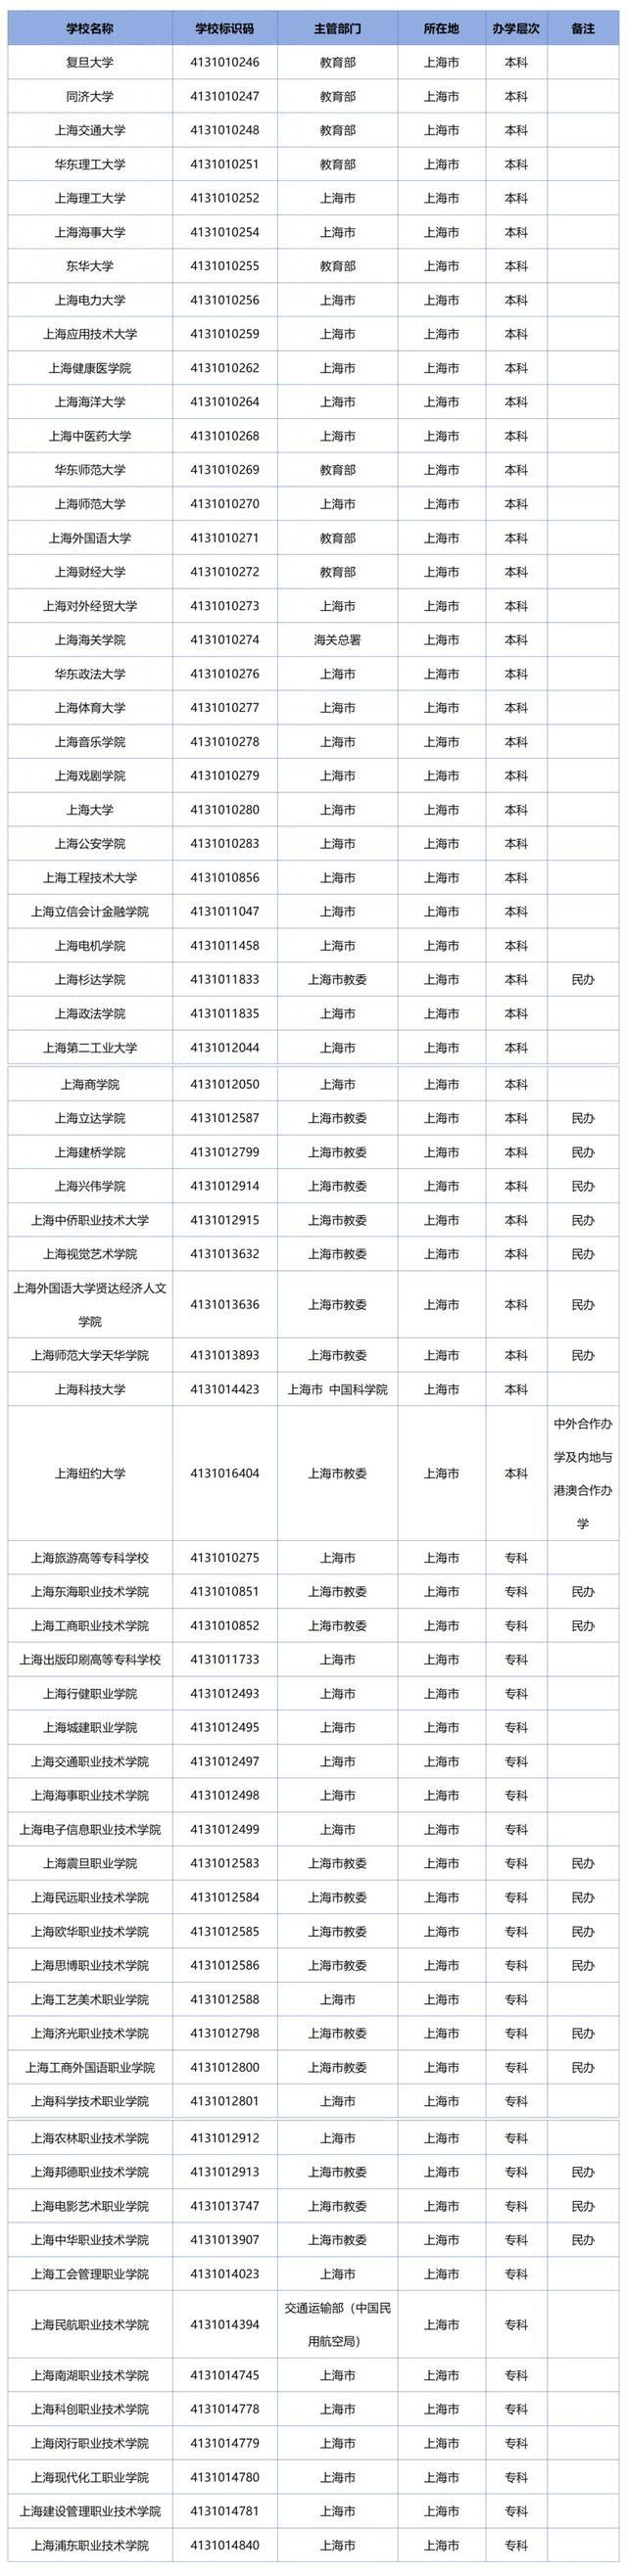 上海共81所！教育部发布全国高校名单